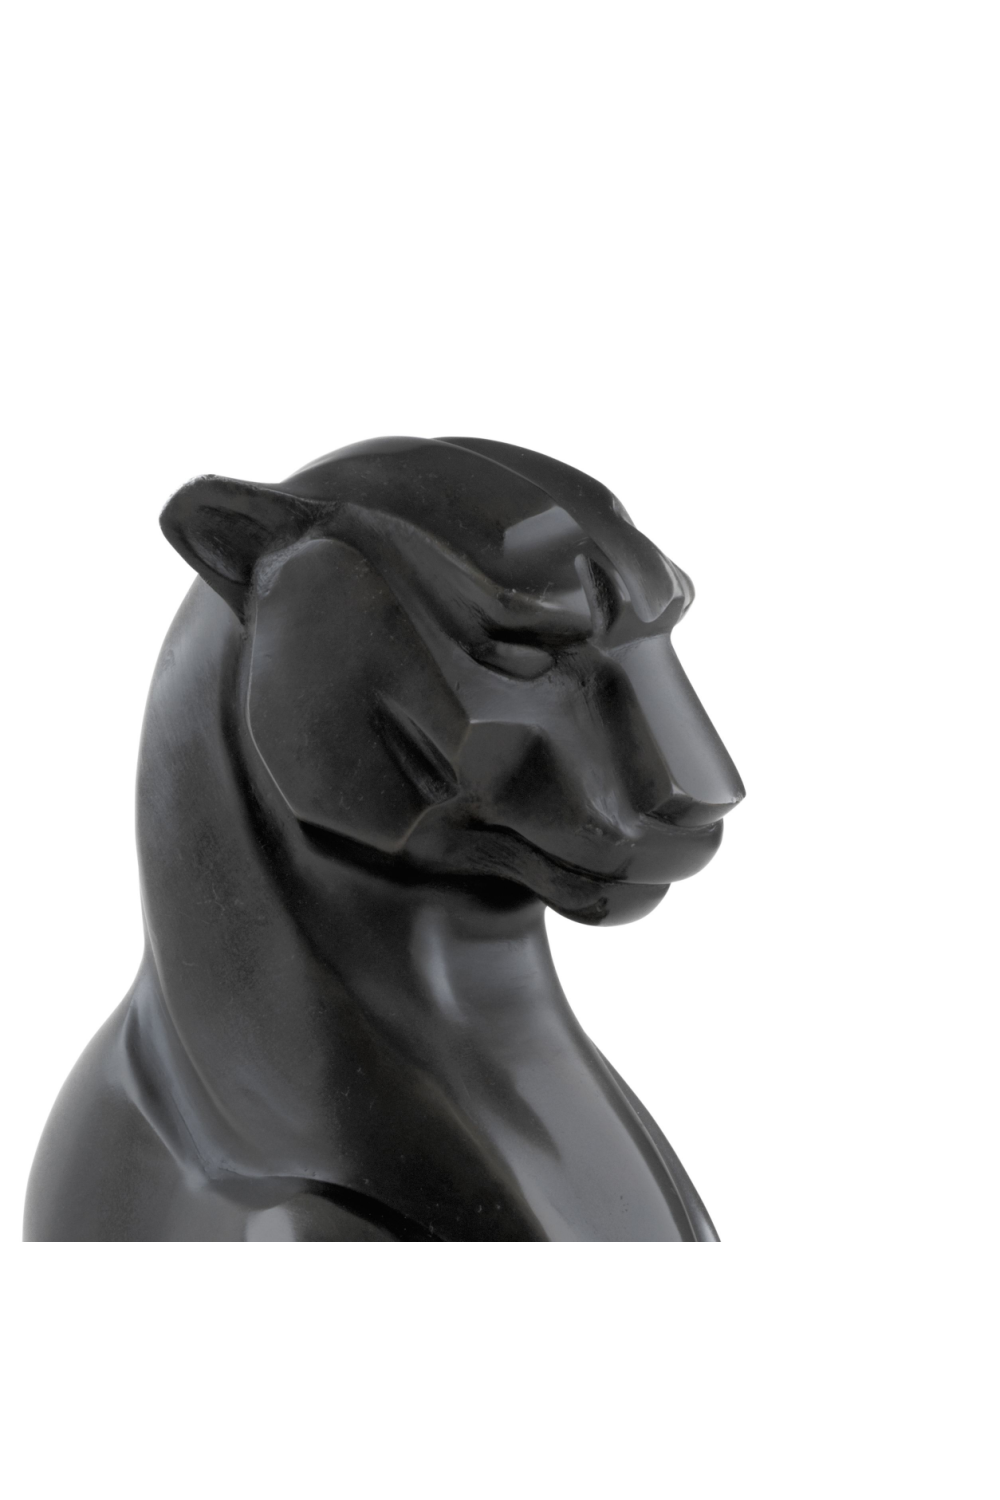 Black Leopard Statue Panthere Noir